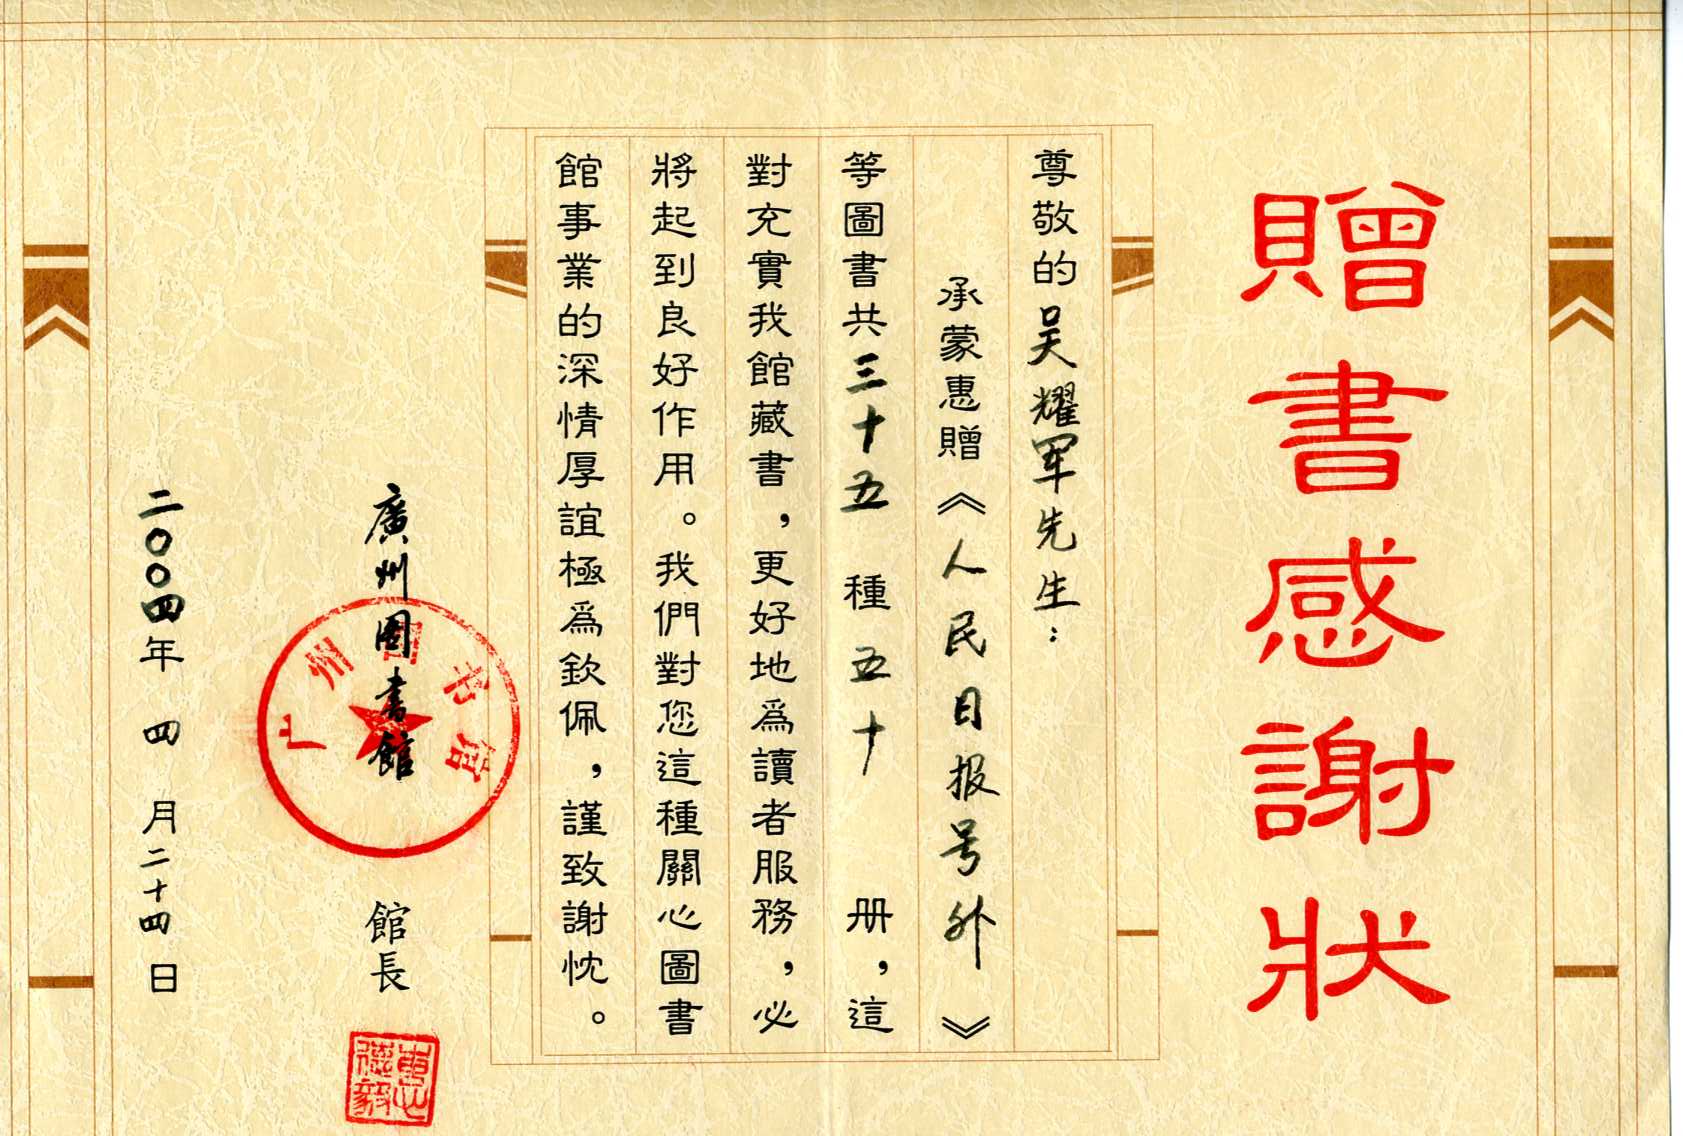 04年廣州圖書館為吳耀軍頒發的榮譽證書